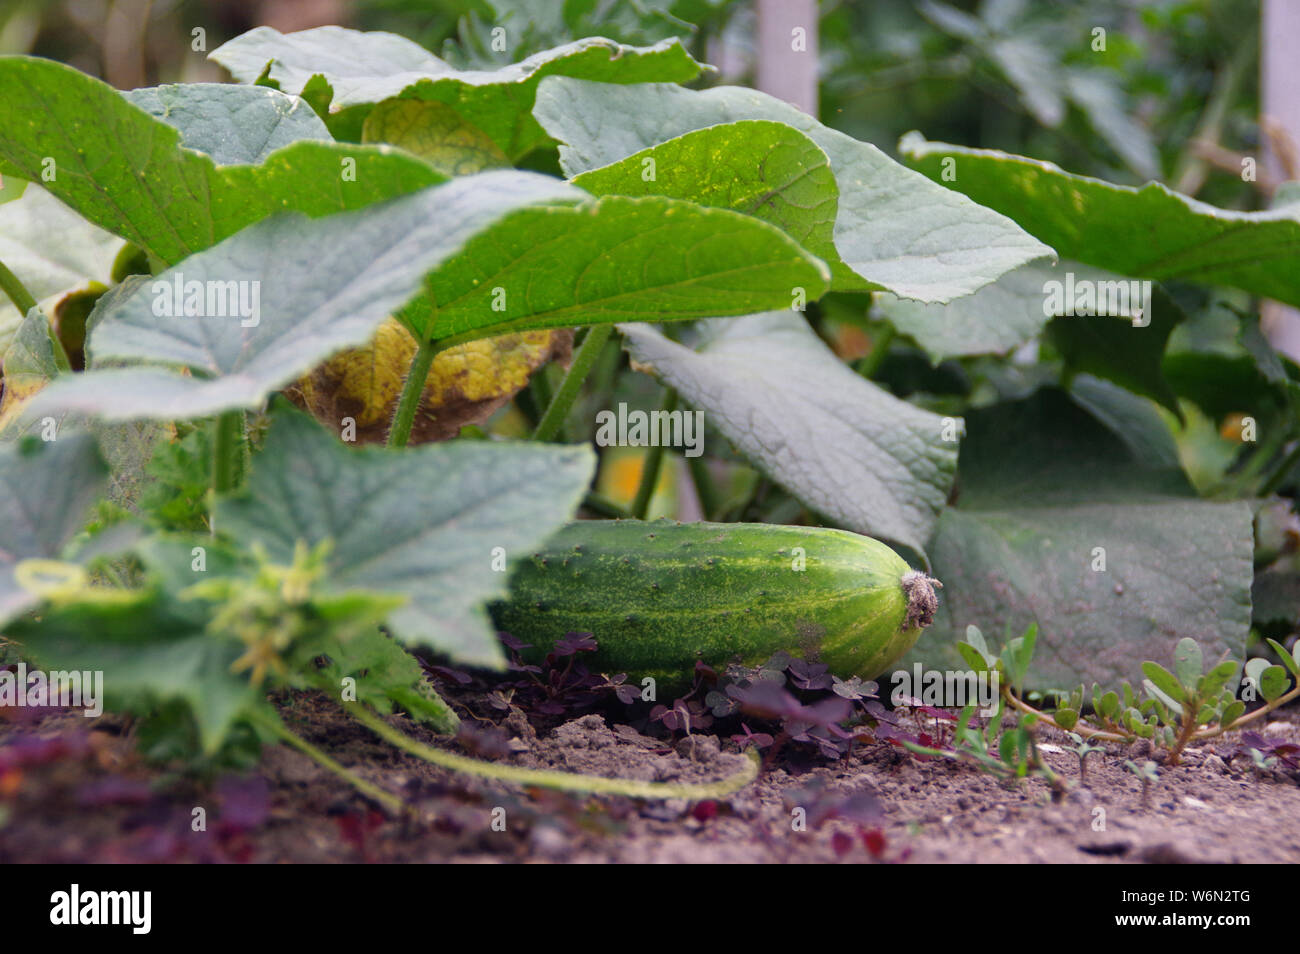 Cetriolo organico agricoltura in giardino. Ecologia e salute - coltivazione di ortaggi verdi. Rurale scena. Foto Stock